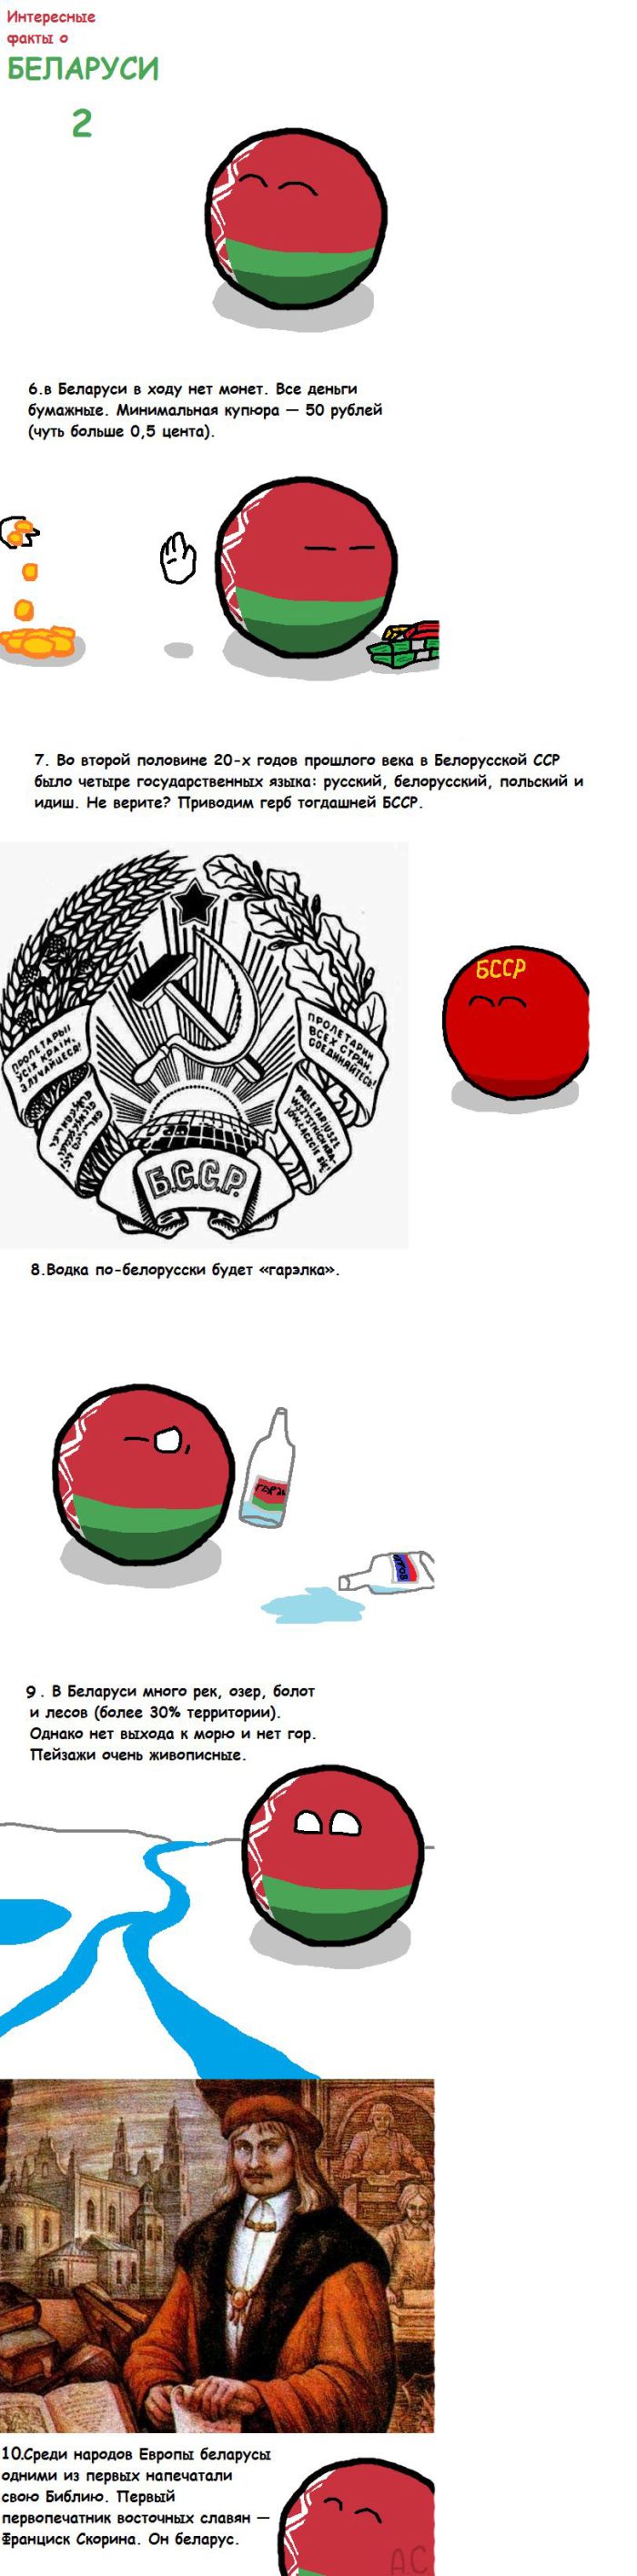 Интересные факты о Белоруссии (8 фото)